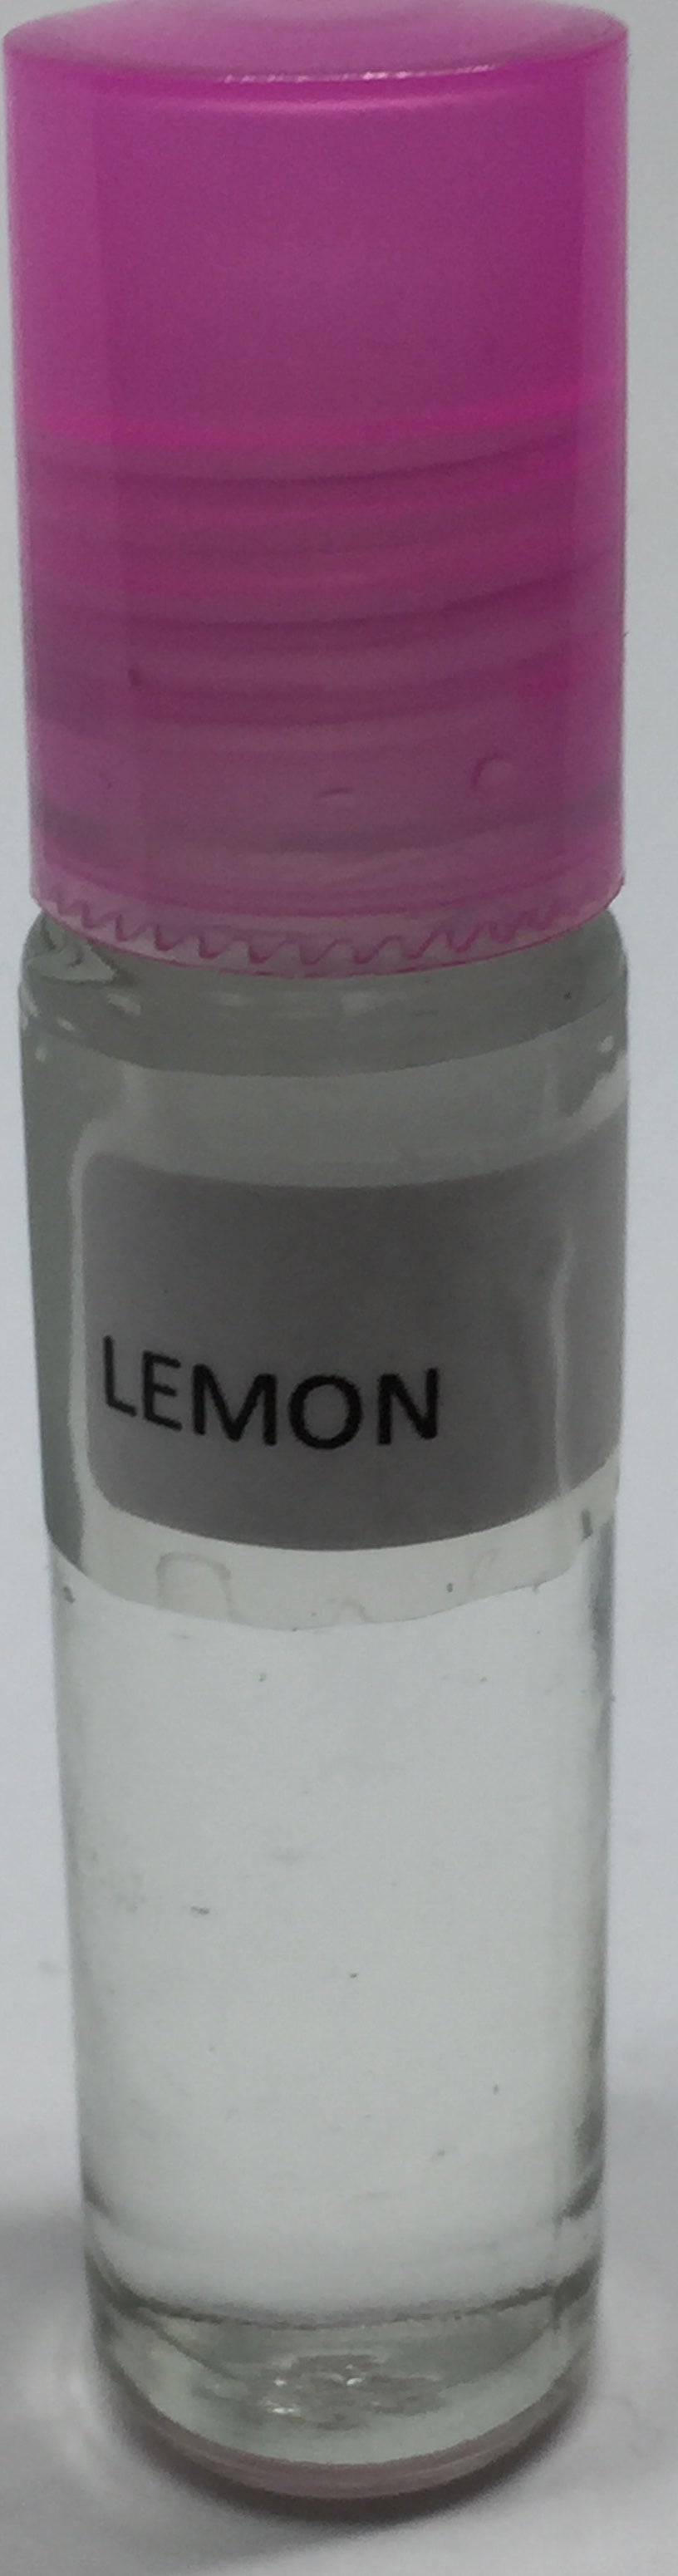 Lemon: Fragrance(Perfume)Body Oil Unisex